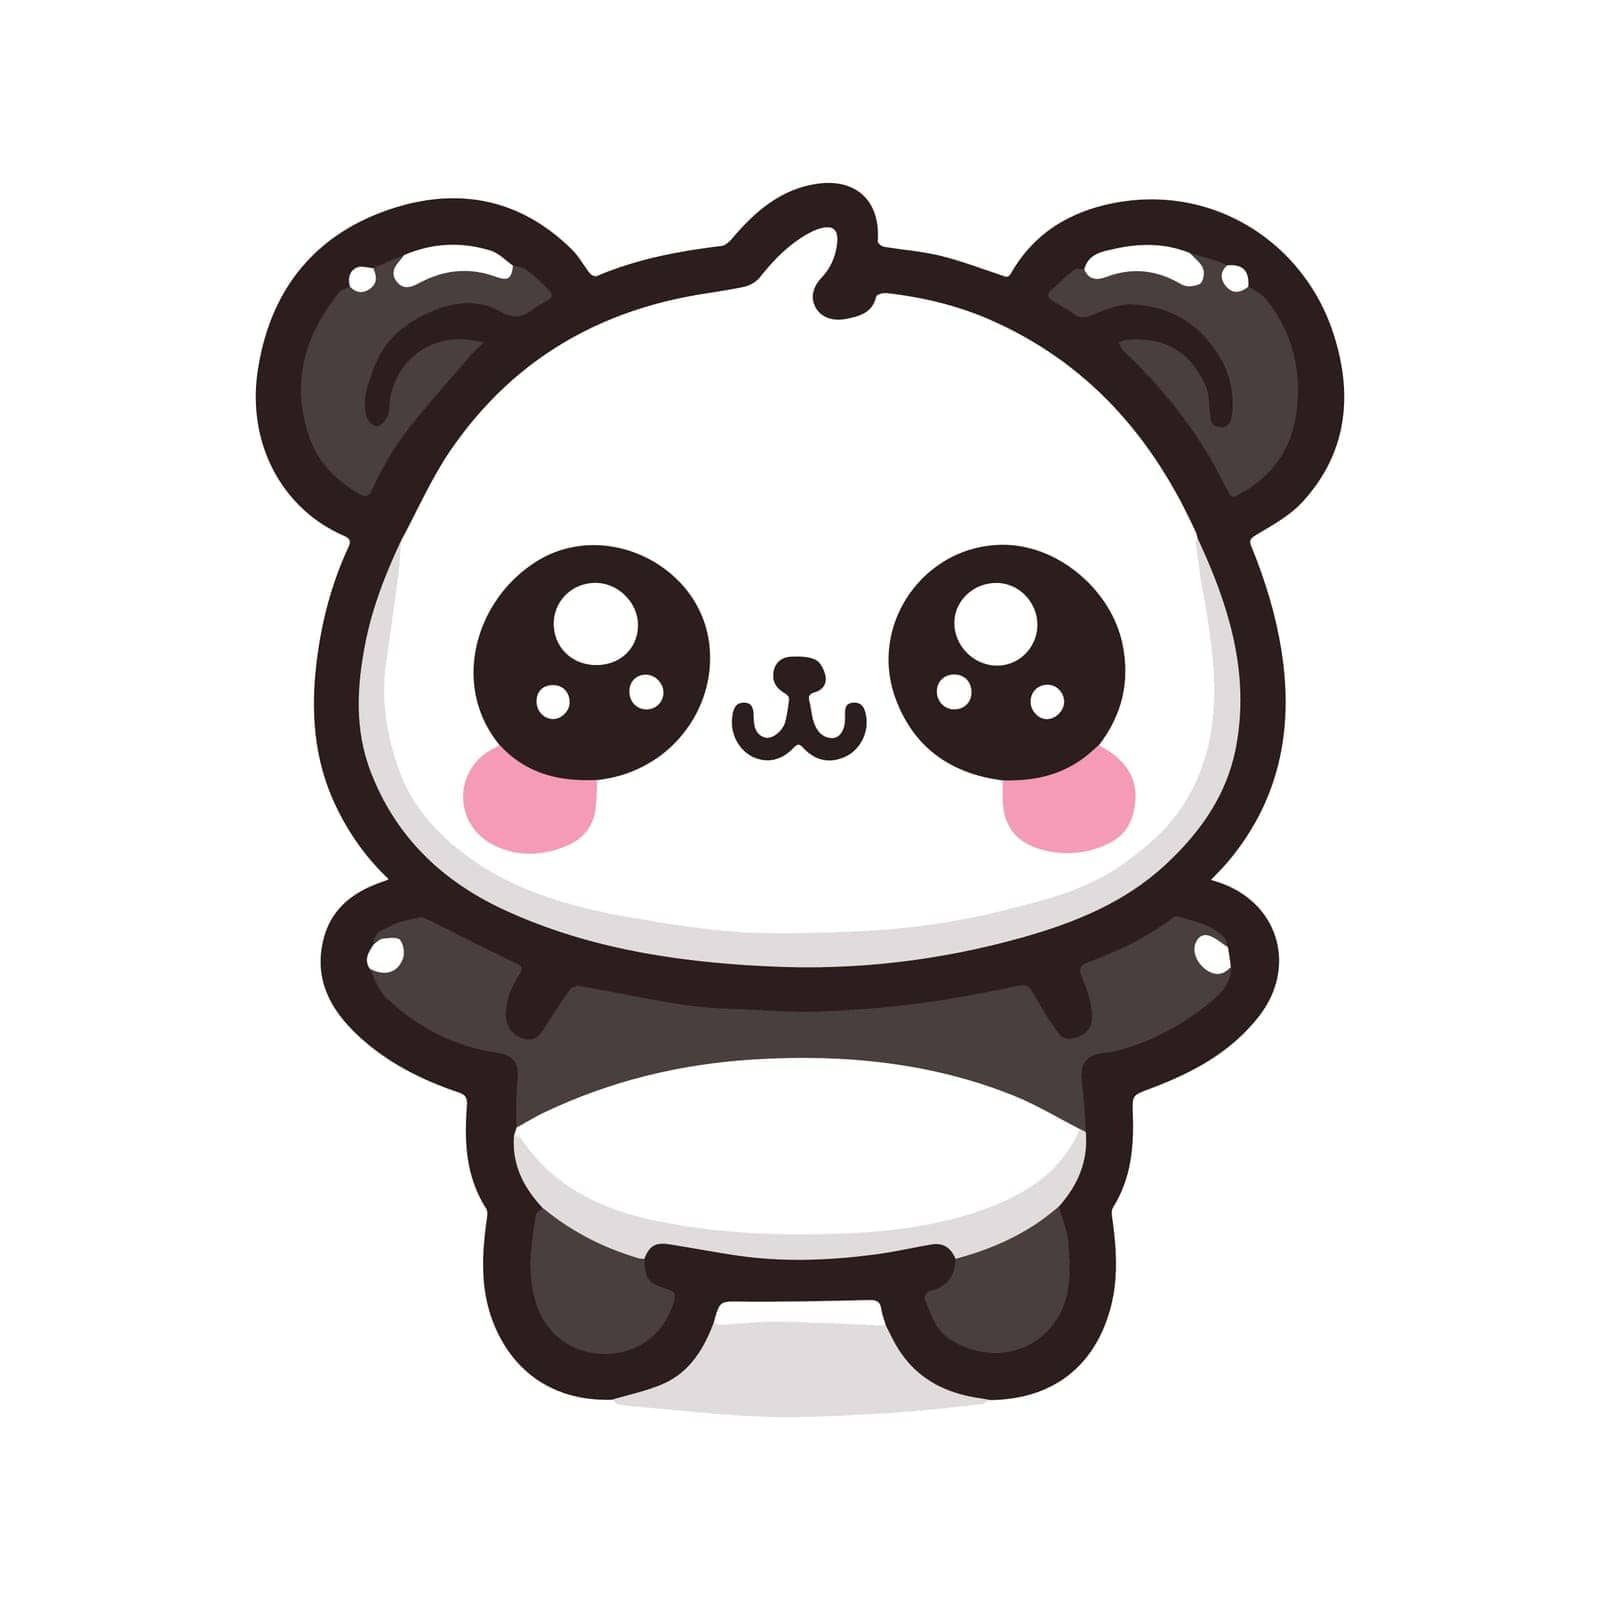 Cute Kawaii Panda Bear Mascot. Cartoon Funny Smiling Happy Panda Sticker. Vector illustration